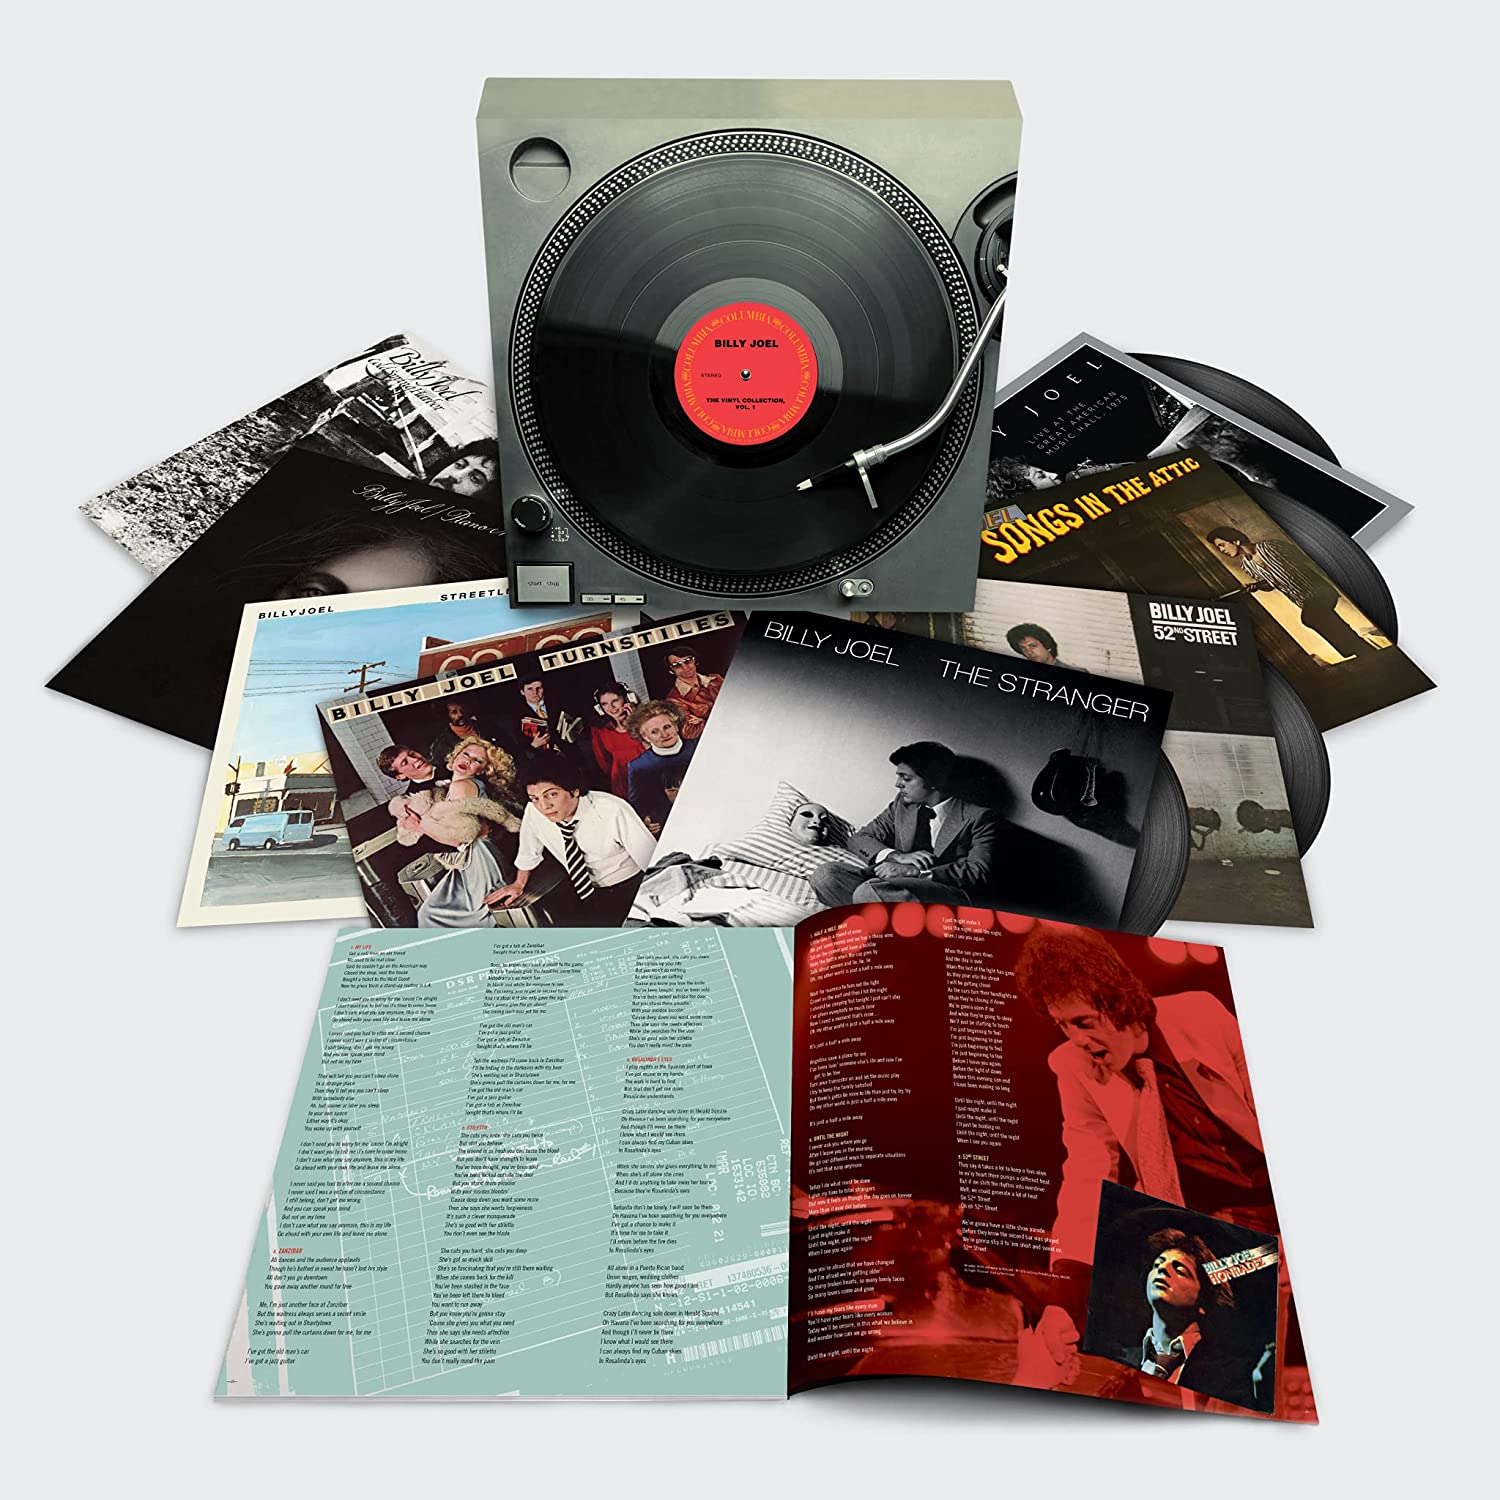 BILLY JOEL - The Vinyl Collection Vol. 1 - 9LP - Vinyl Boxset